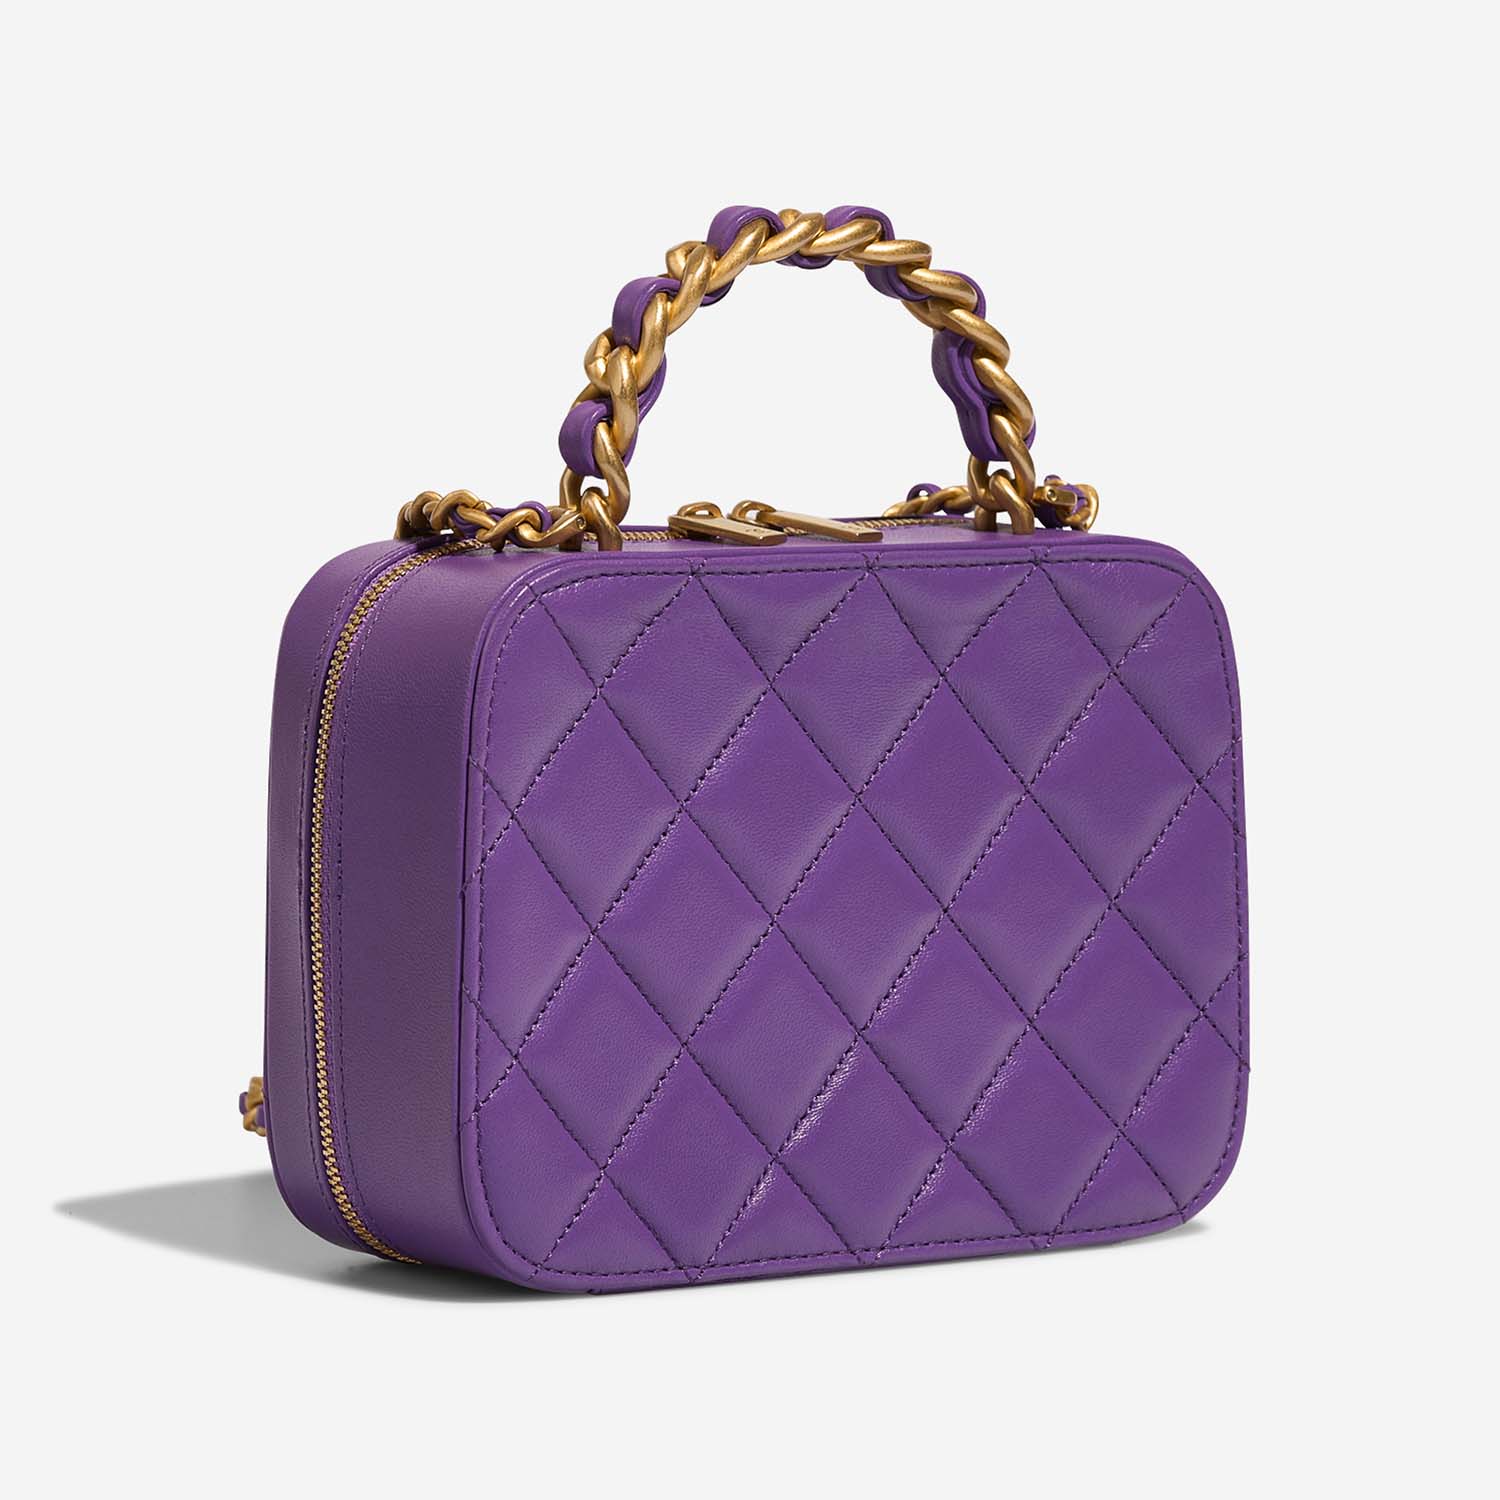 Chanel Vanity Small Violet Side Back | Verkaufen Sie Ihre Designer-Tasche auf Saclab.com